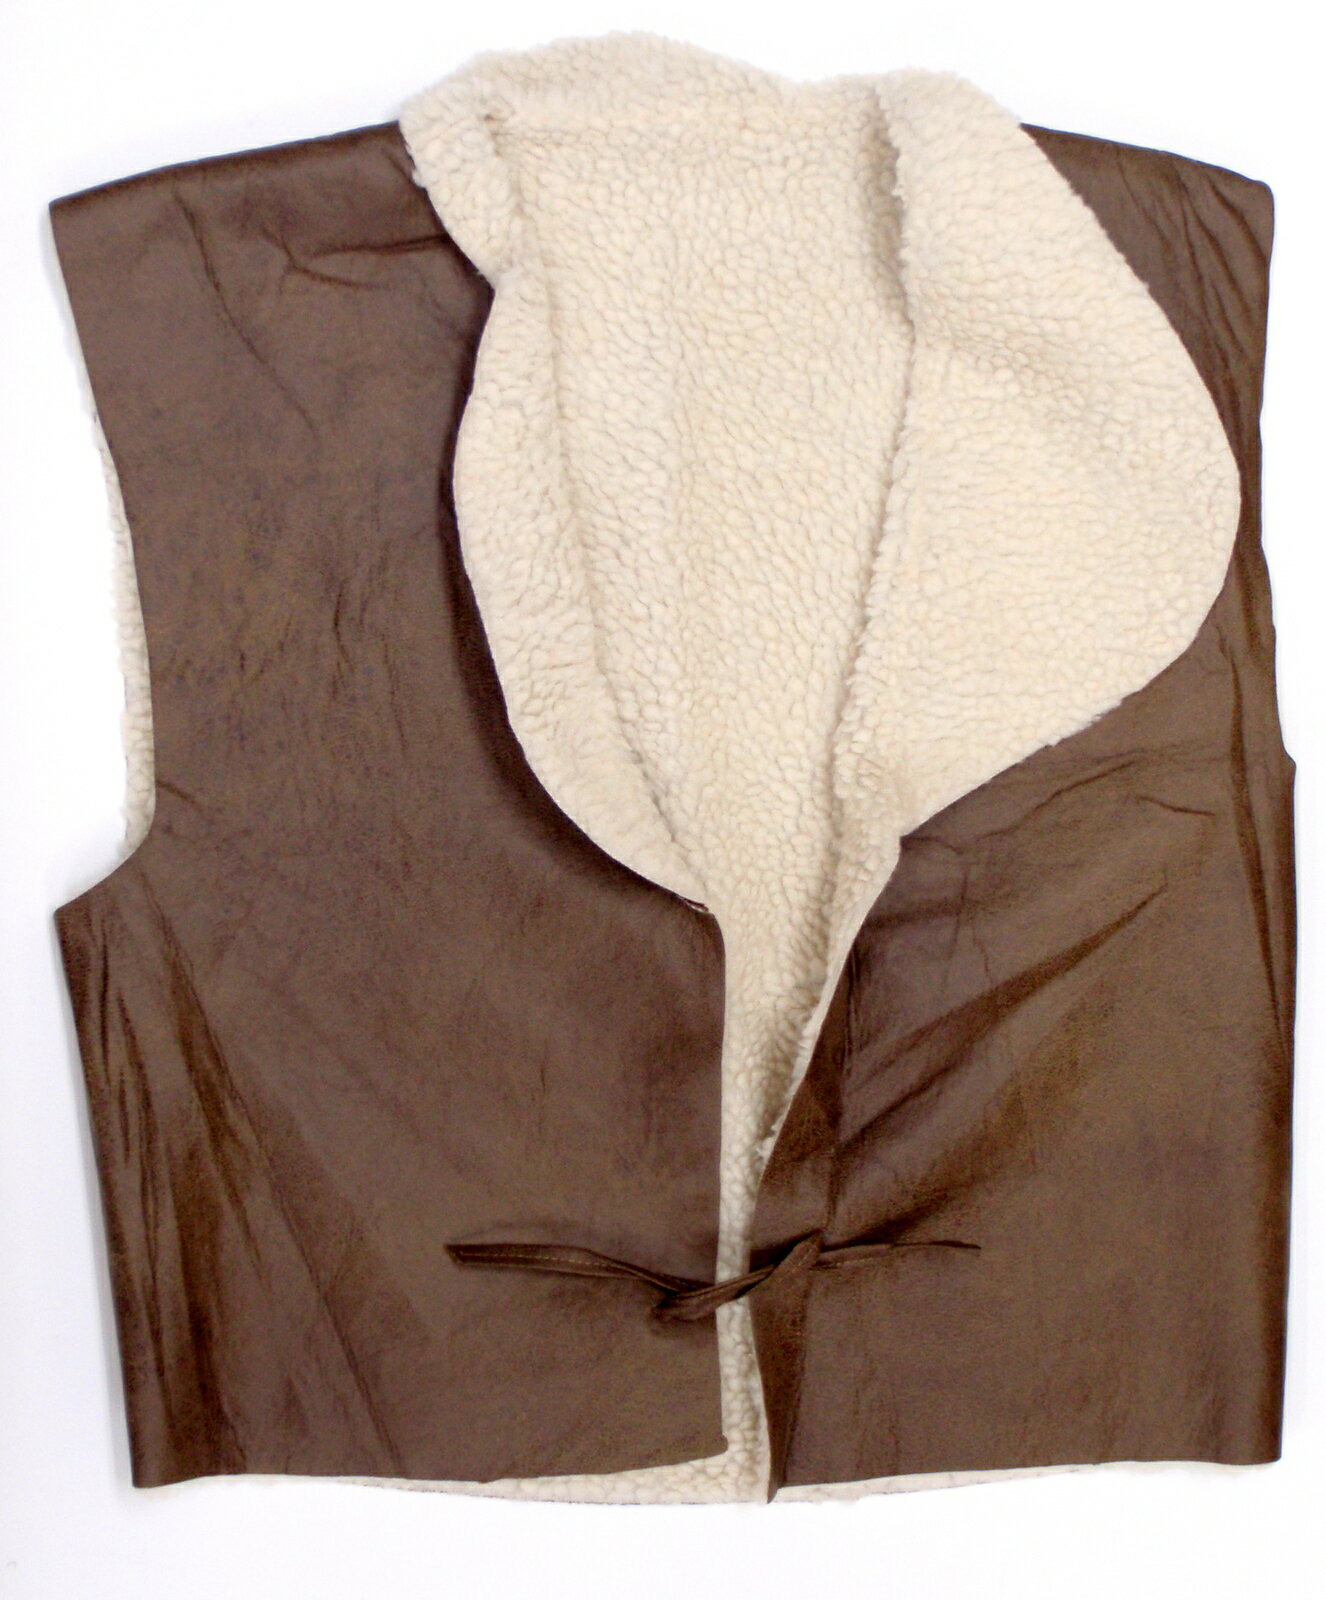 Kokkado | Rakuten Global Market: Gunman cowboy sheepskin-like best vest ...